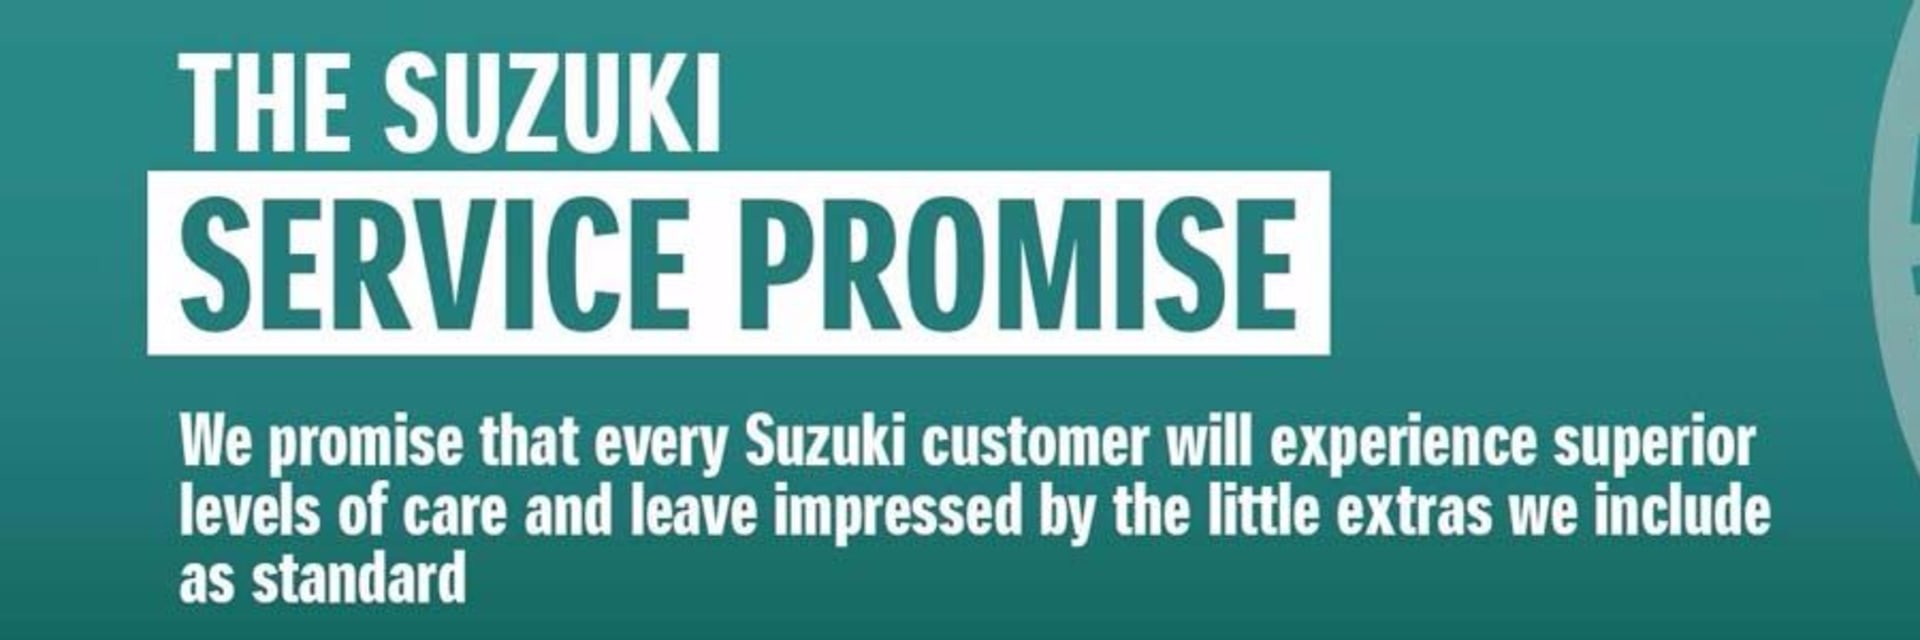 Suzuki Service Promise 